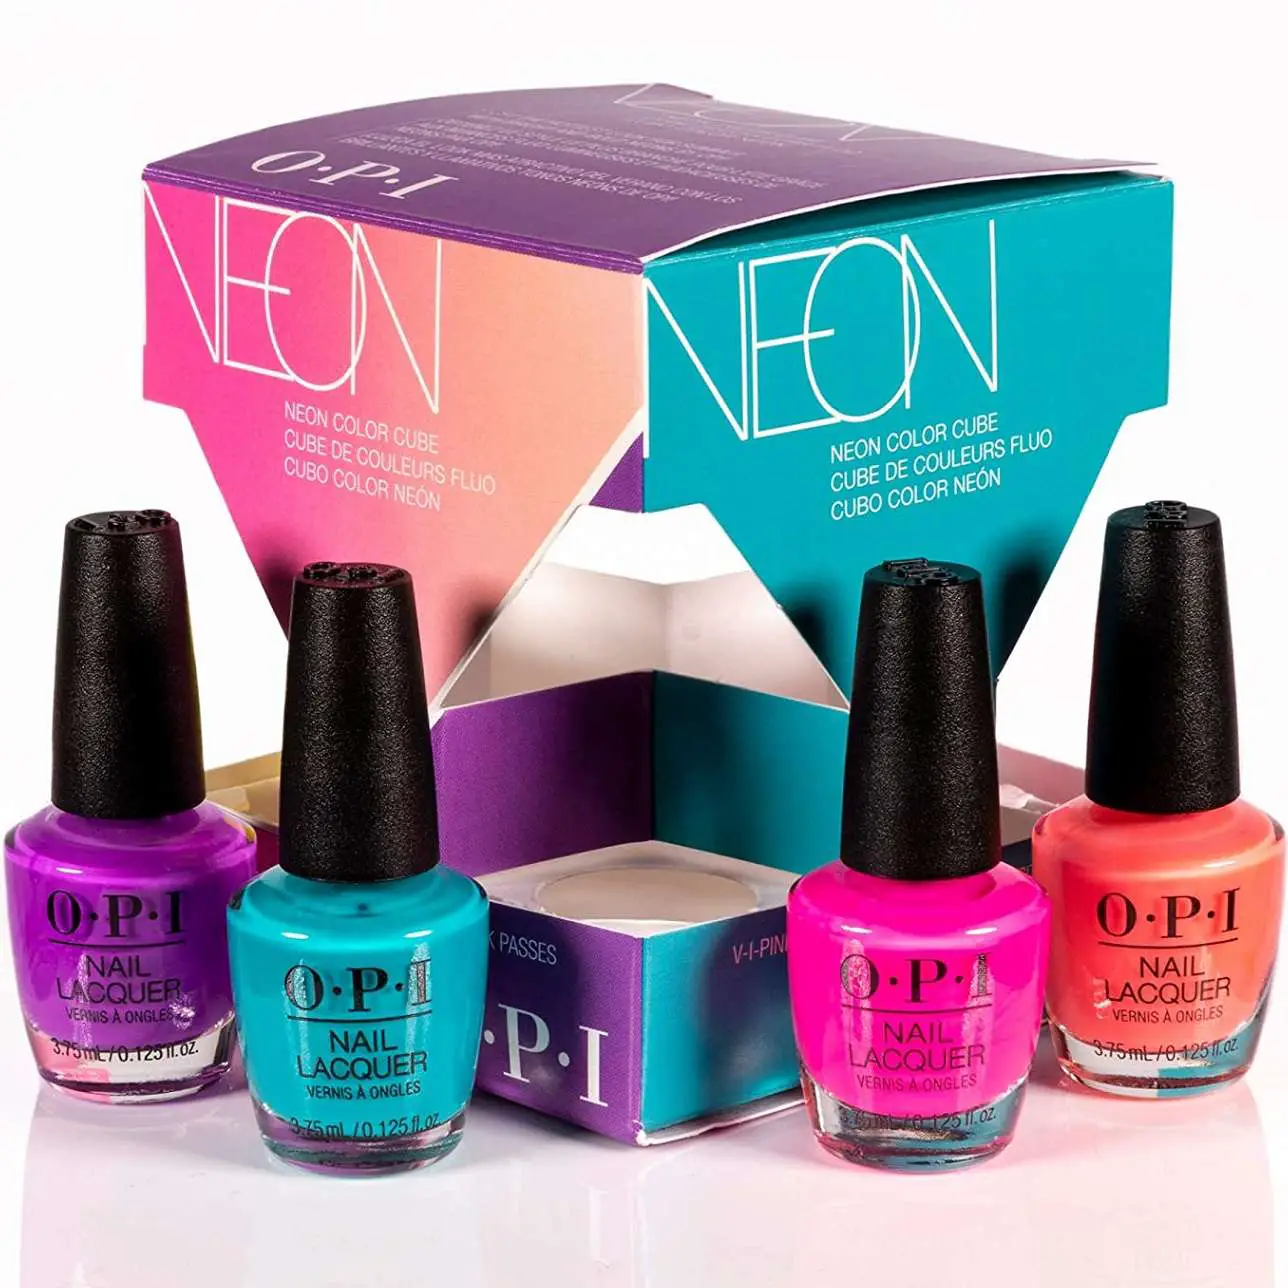 OPI Neon Cube 4pcs Nail Polish Mini Pack Gift Set